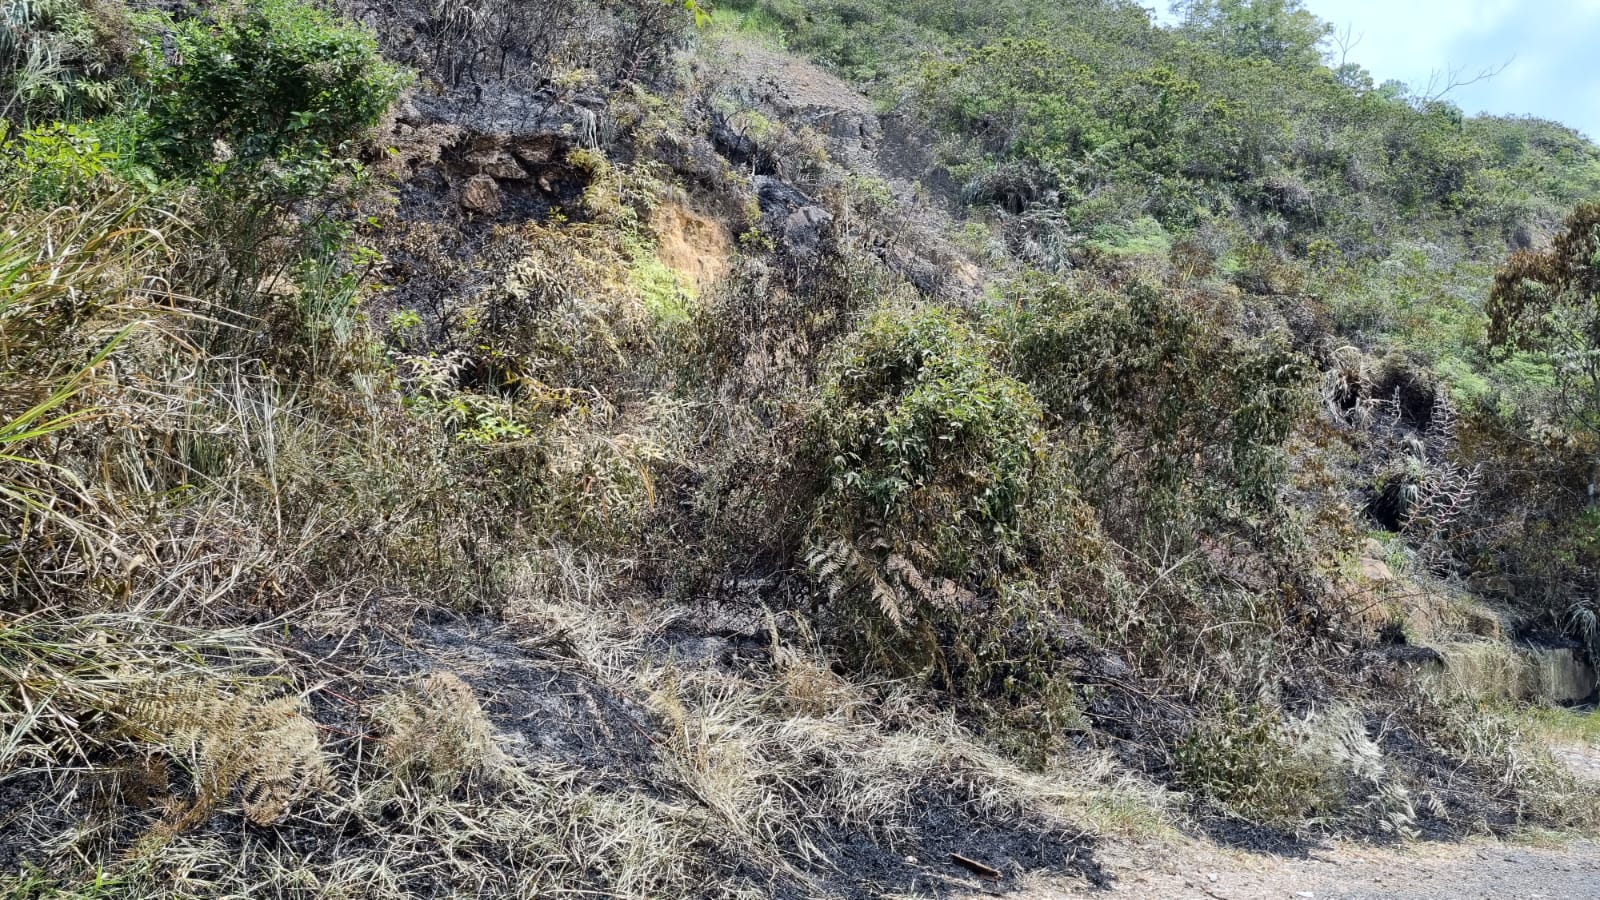 Nuevo ataque: Incendian maquinaria en cultivo de caña en el Cauca